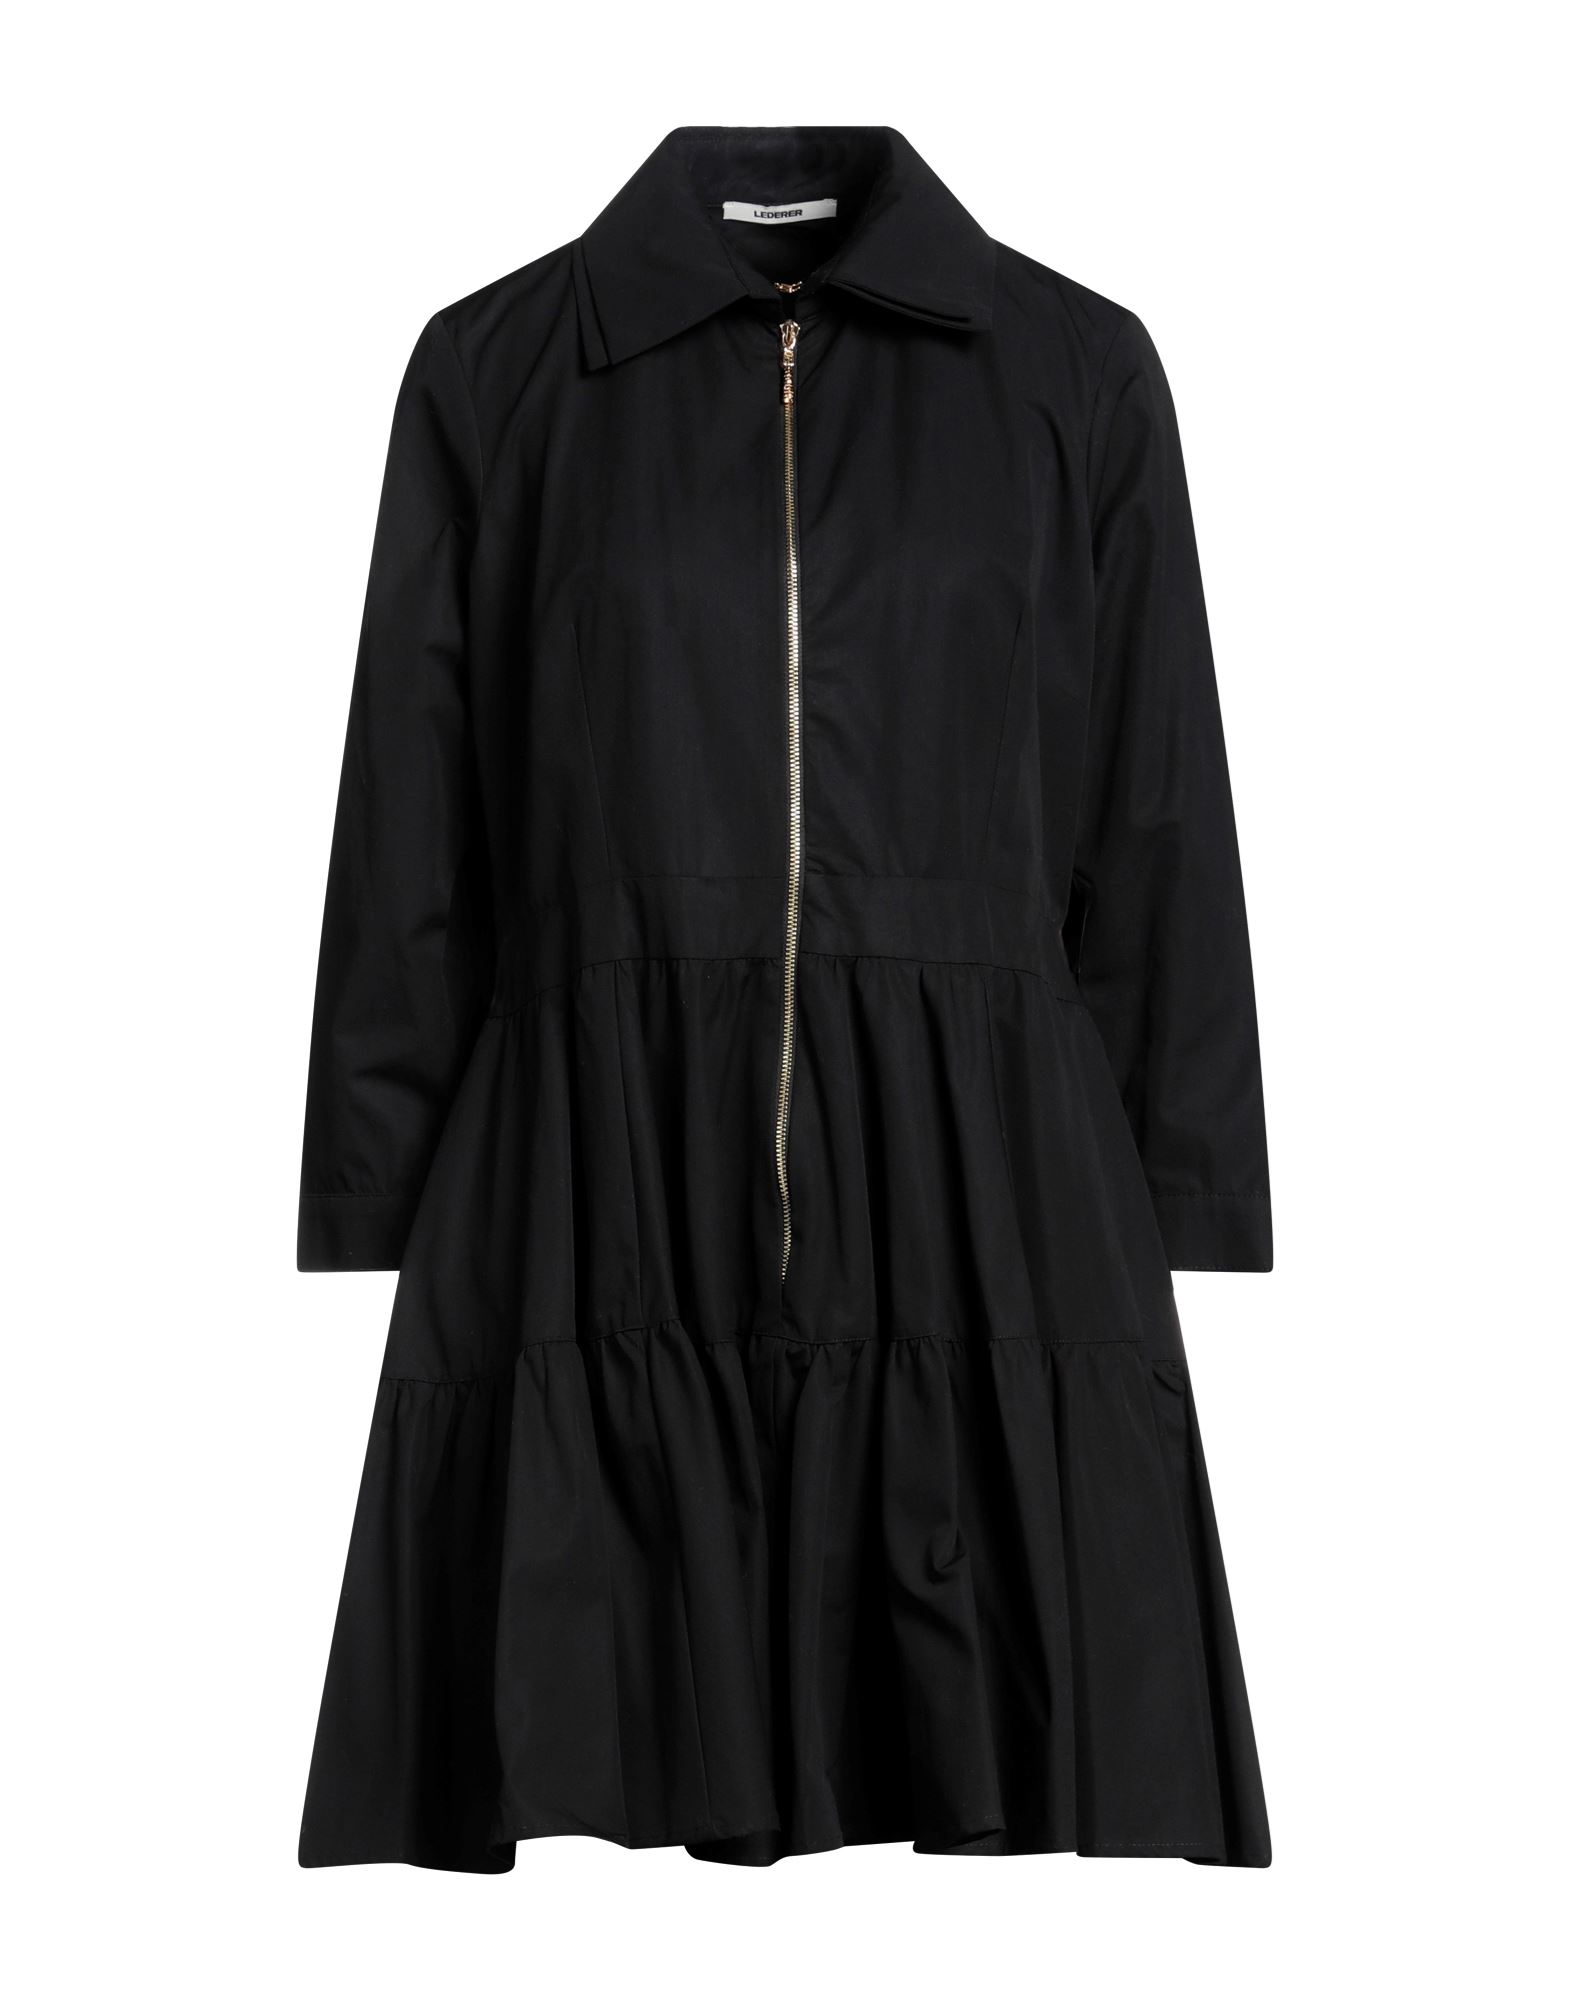 Max & Moi Lederer Woman Mini Dress Black Size 10 Cotton, Viscose